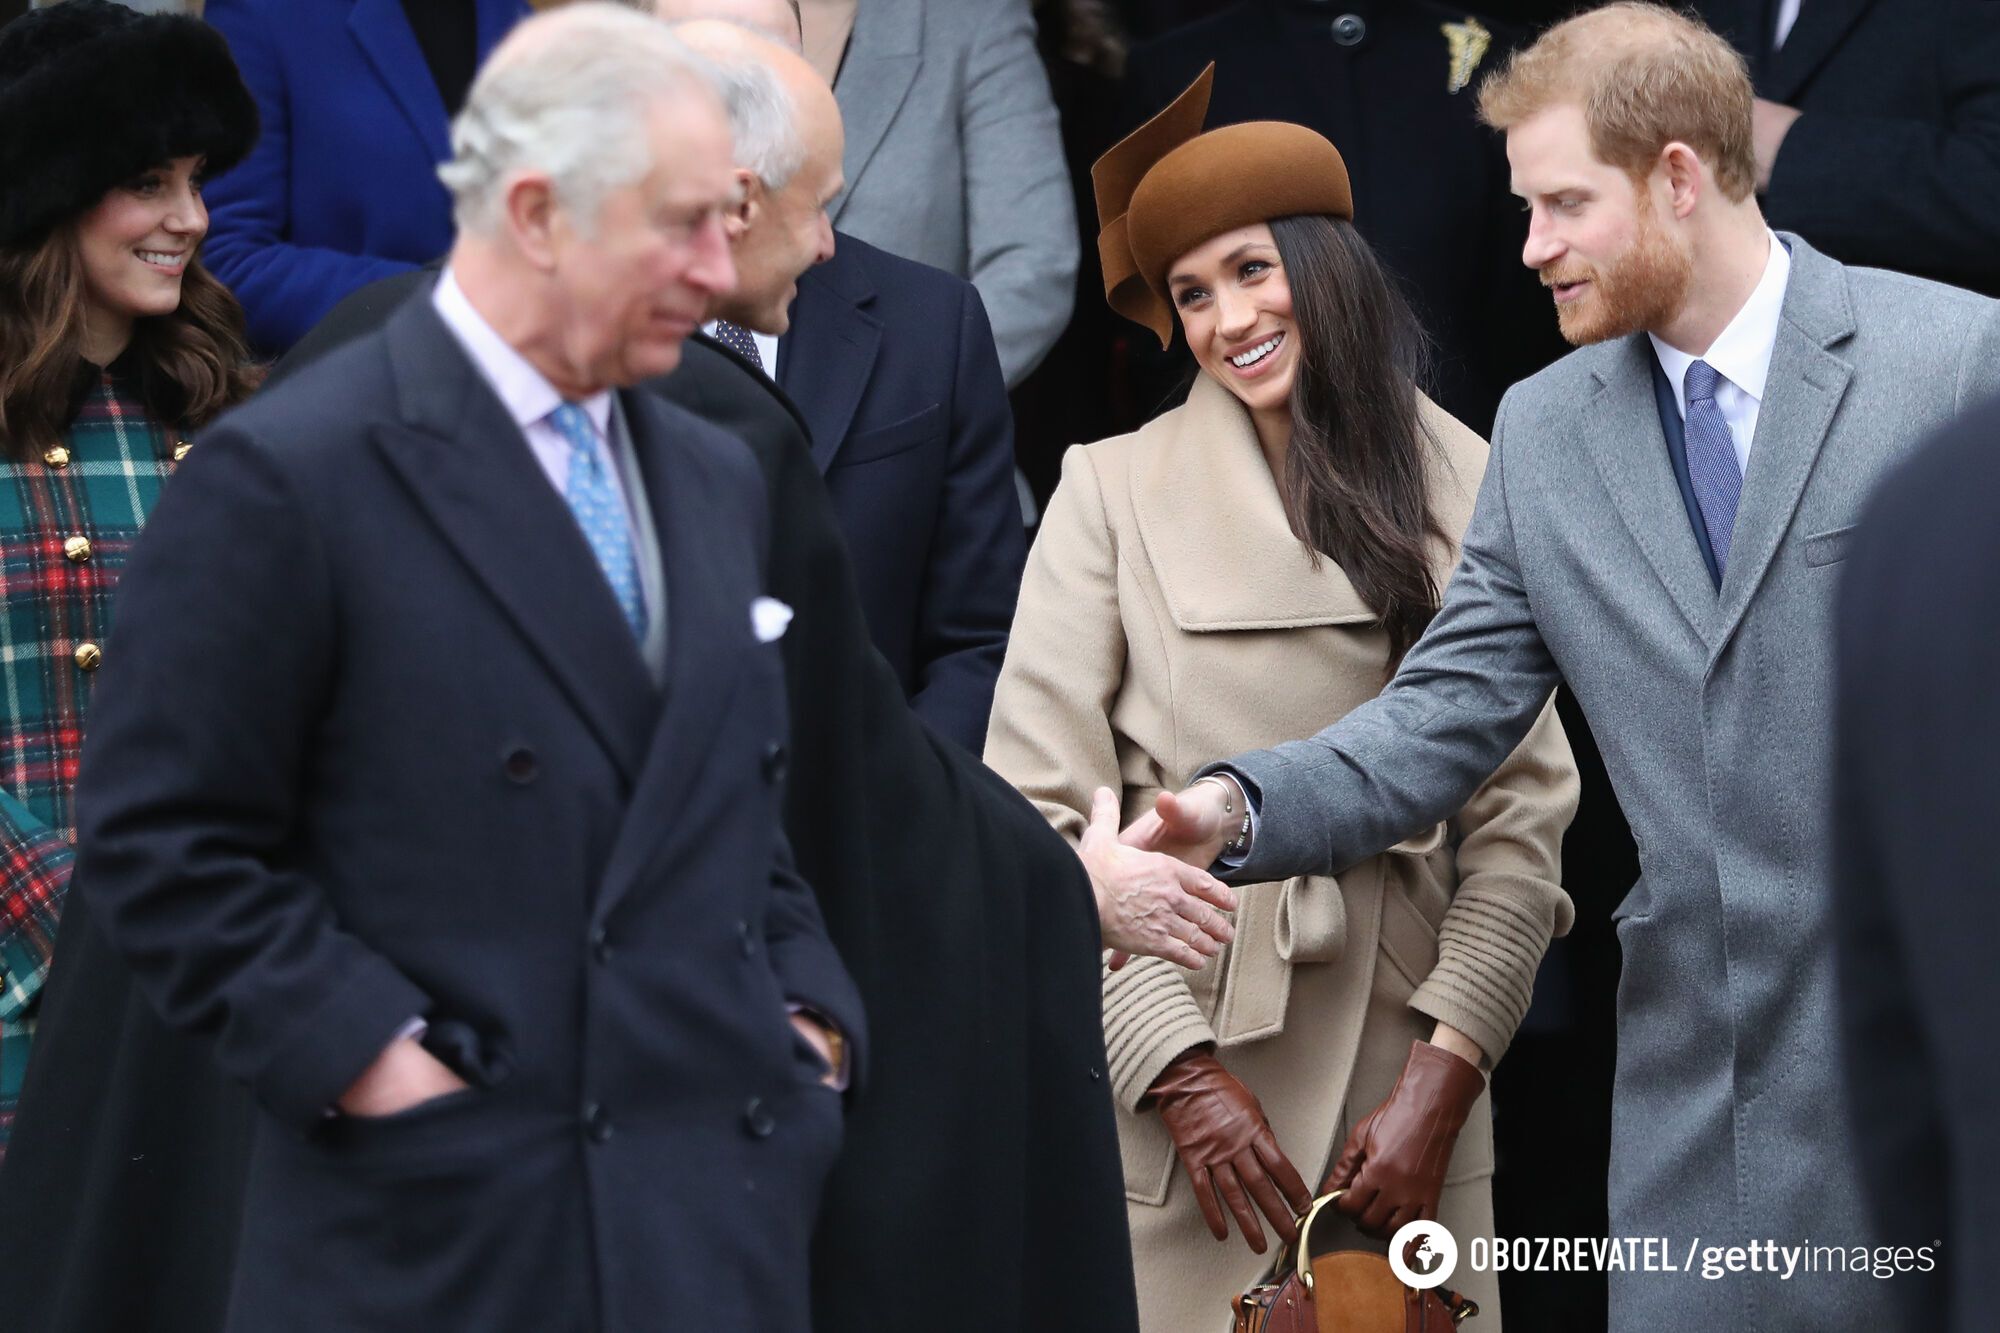 Rodzina królewska usunęła oświadczenie księcia Harry'ego o jego romansie z Meghan Markle z oficjalnej strony internetowej